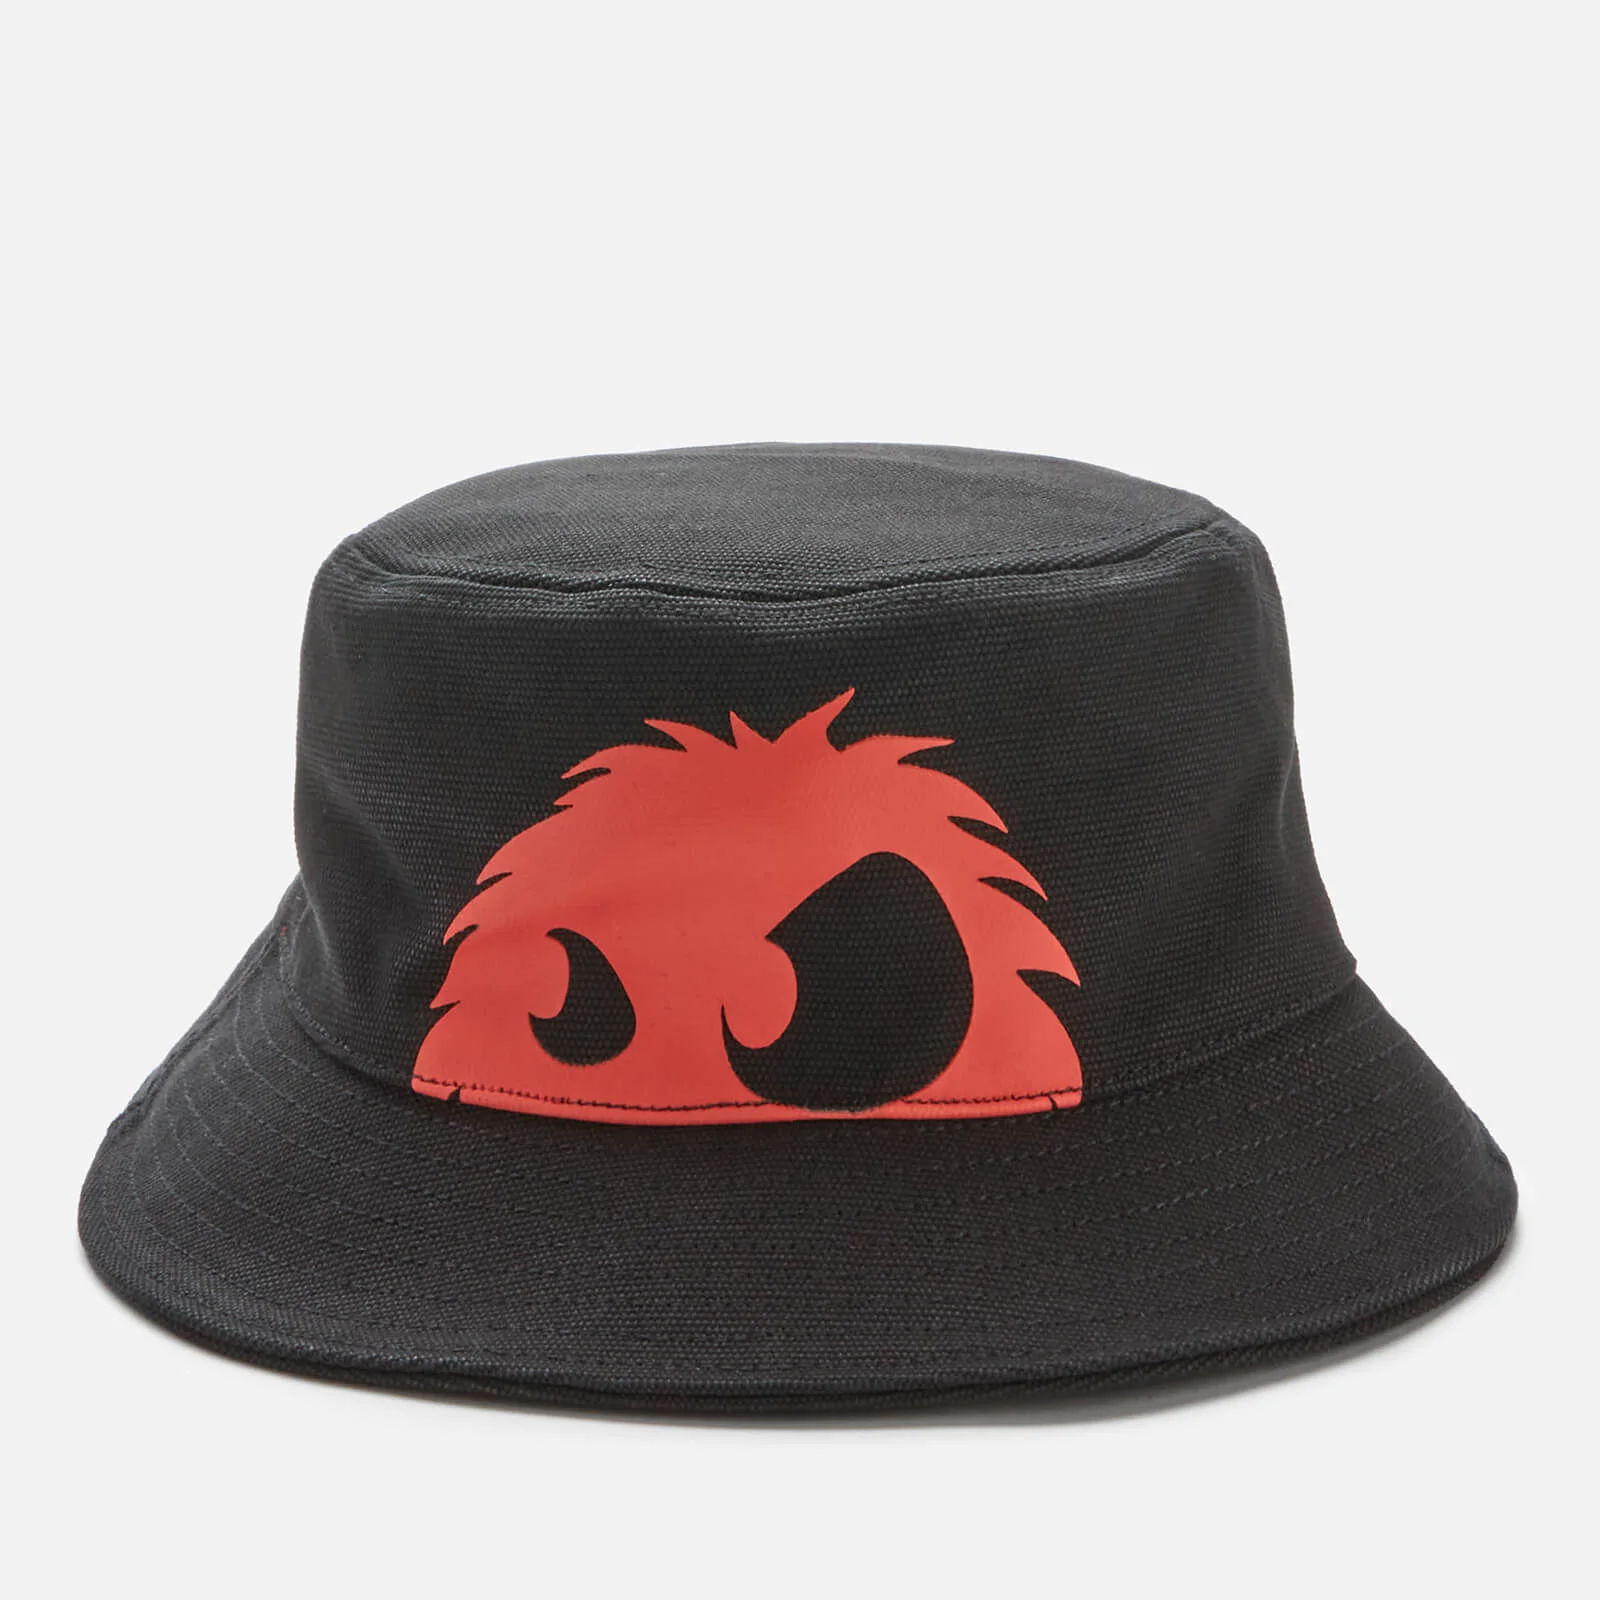 McQ Alexander McQueen Men's Bucket Hat - Black/Red Image 1